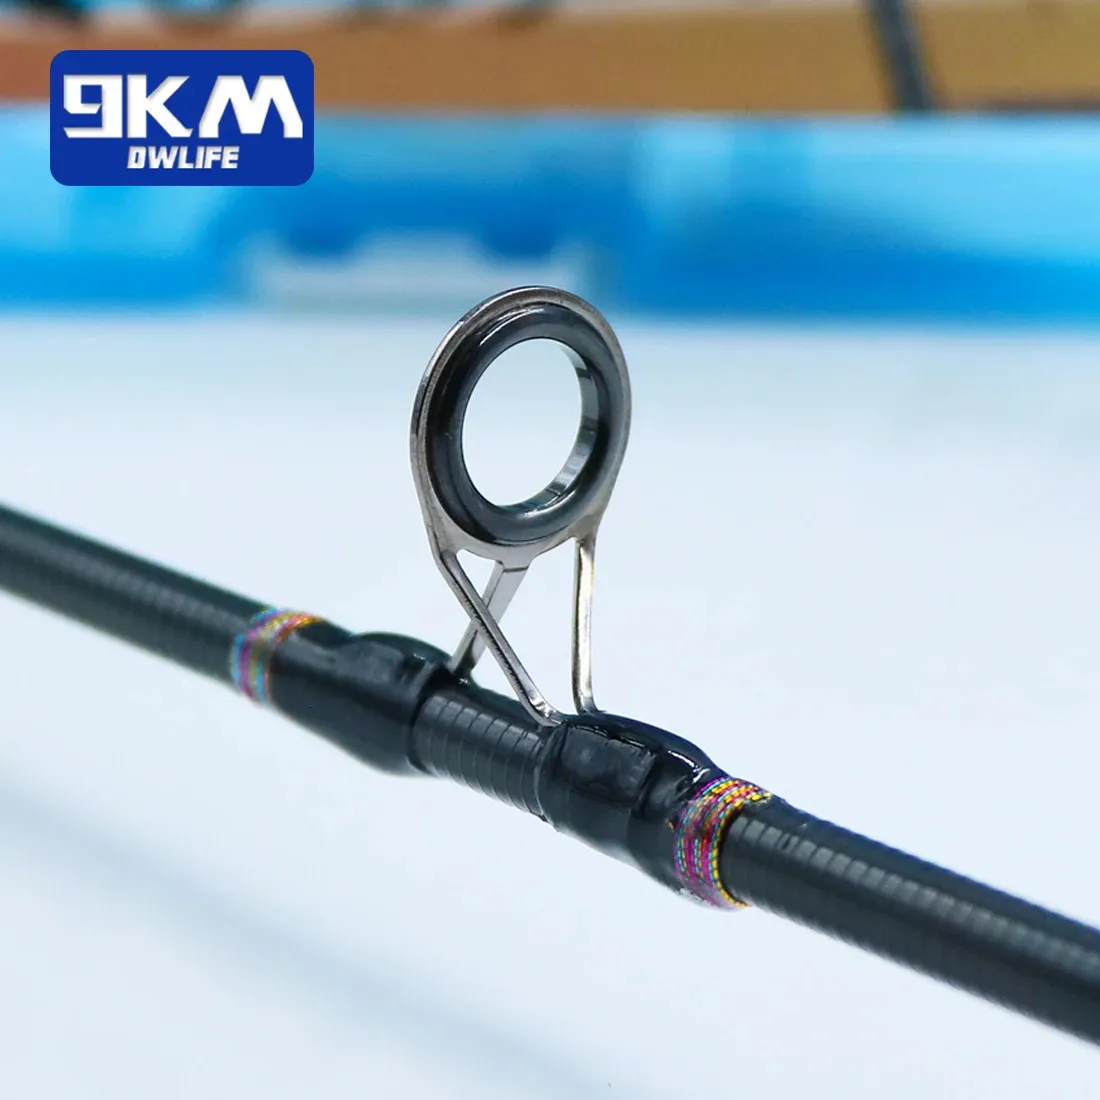  9KM DWLIFE Fishing Rod Repair Ceramic Guide Ring